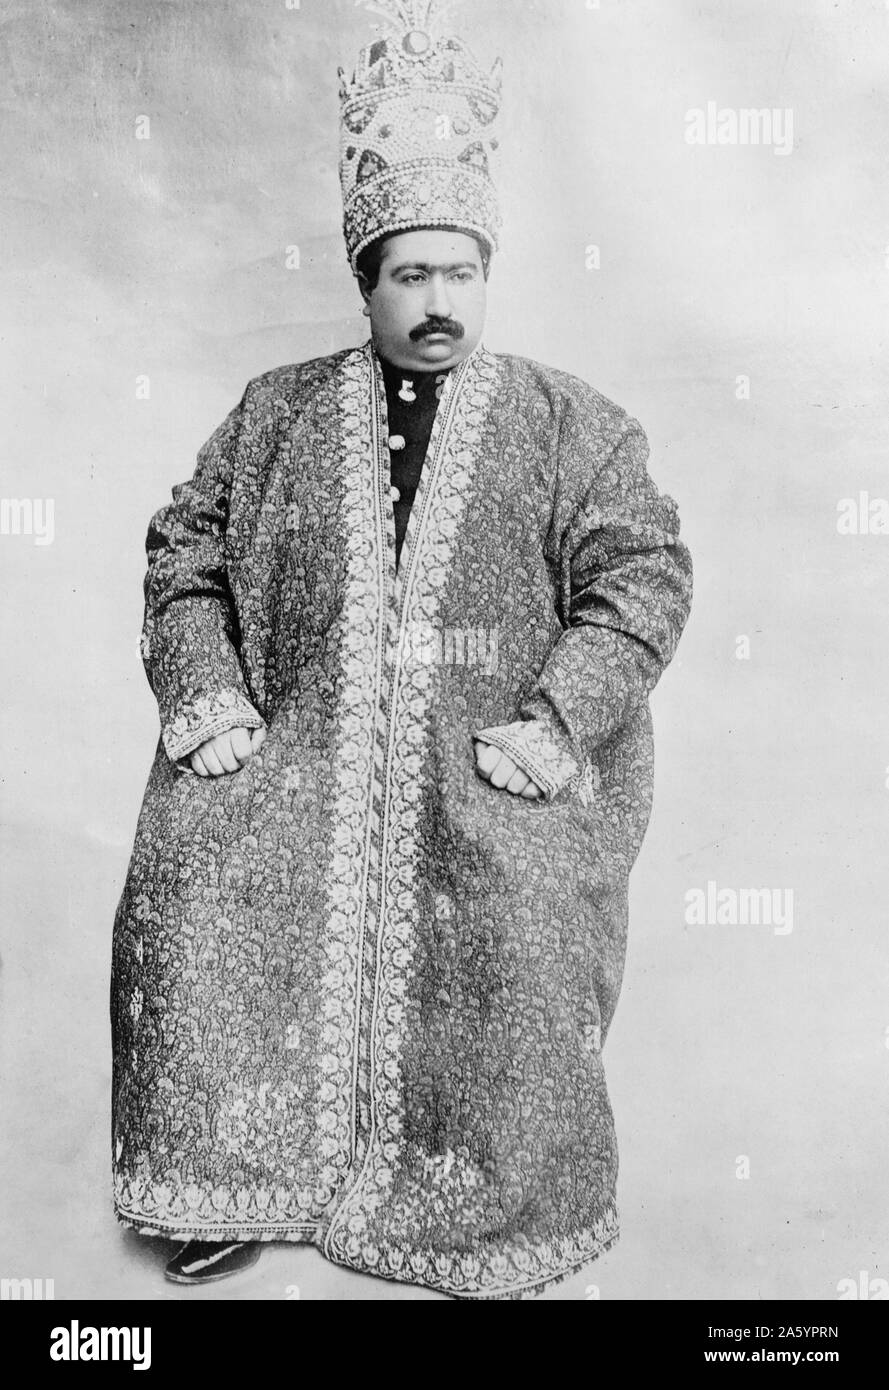 Scià di Persia, Mohammed Ali Mirzi, Dicembre 19, 1907. Fotografia mostra lo scià di Persia, ritratto a figura intera, seduto, indossando un abito ornato e corona. Foto Stock